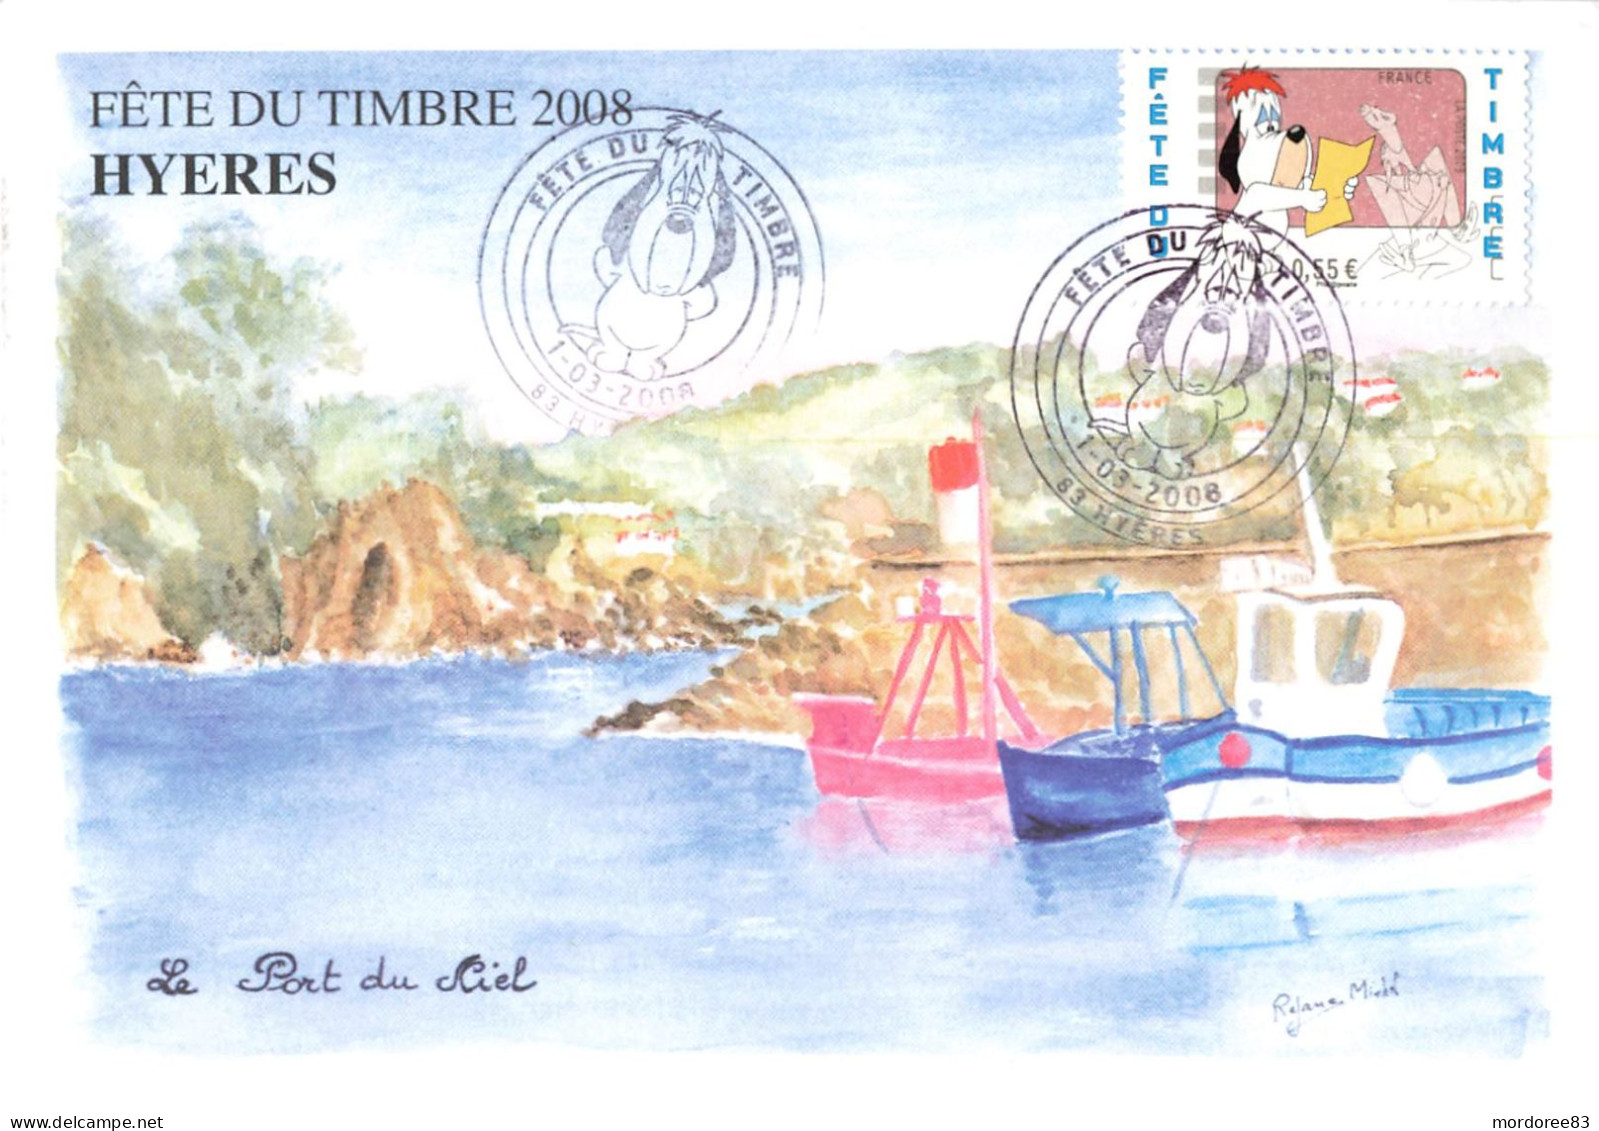 FETE DU TIMBRE HYERES 2008 / LE PORT DU NIEL - Commemorative Postmarks